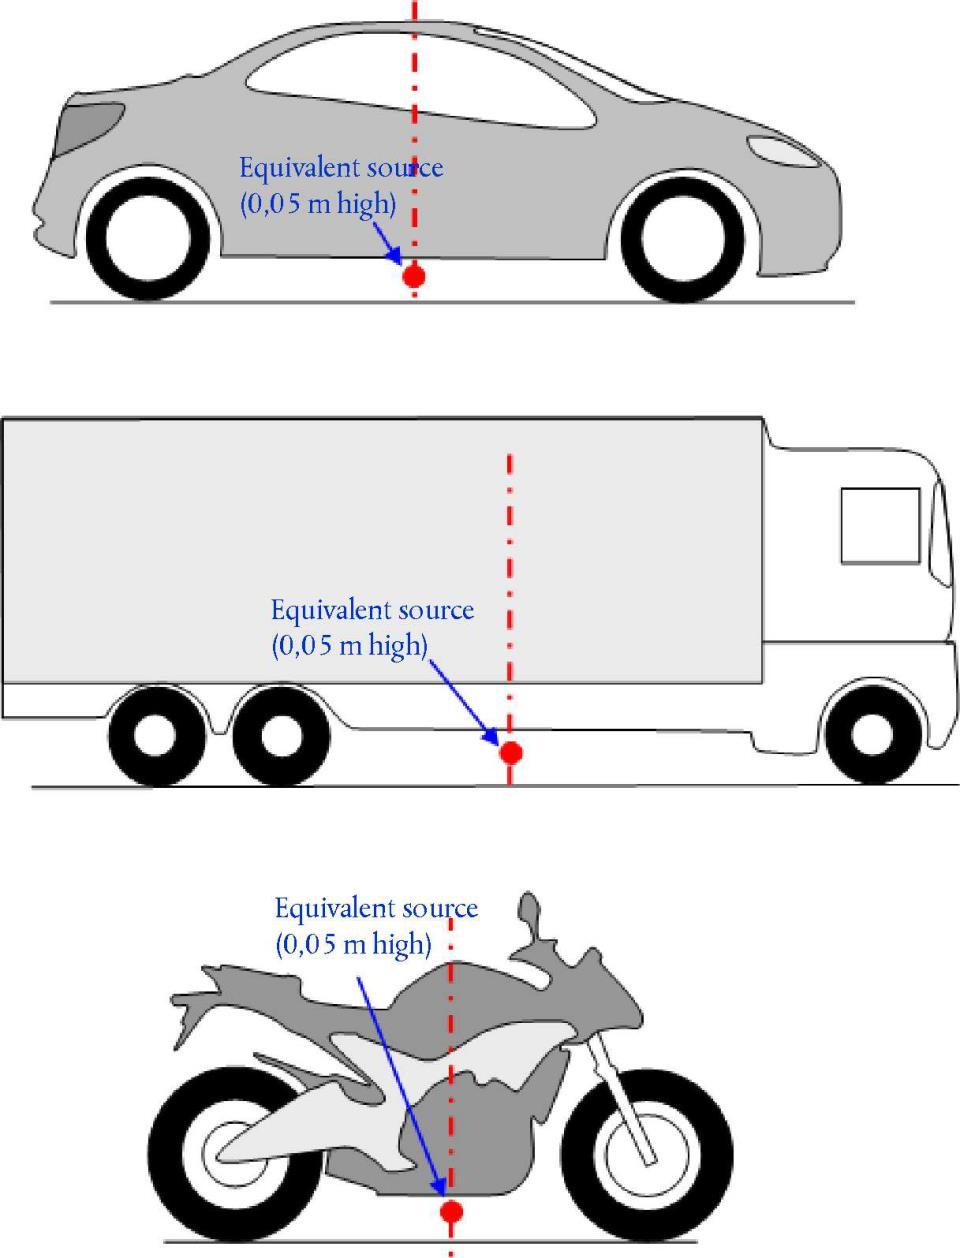 3 CNOSSOS emissiemodel wegverkeer (1) voertuigcategorieën licht middelzwaar zwaar motoren, brommers/scooters